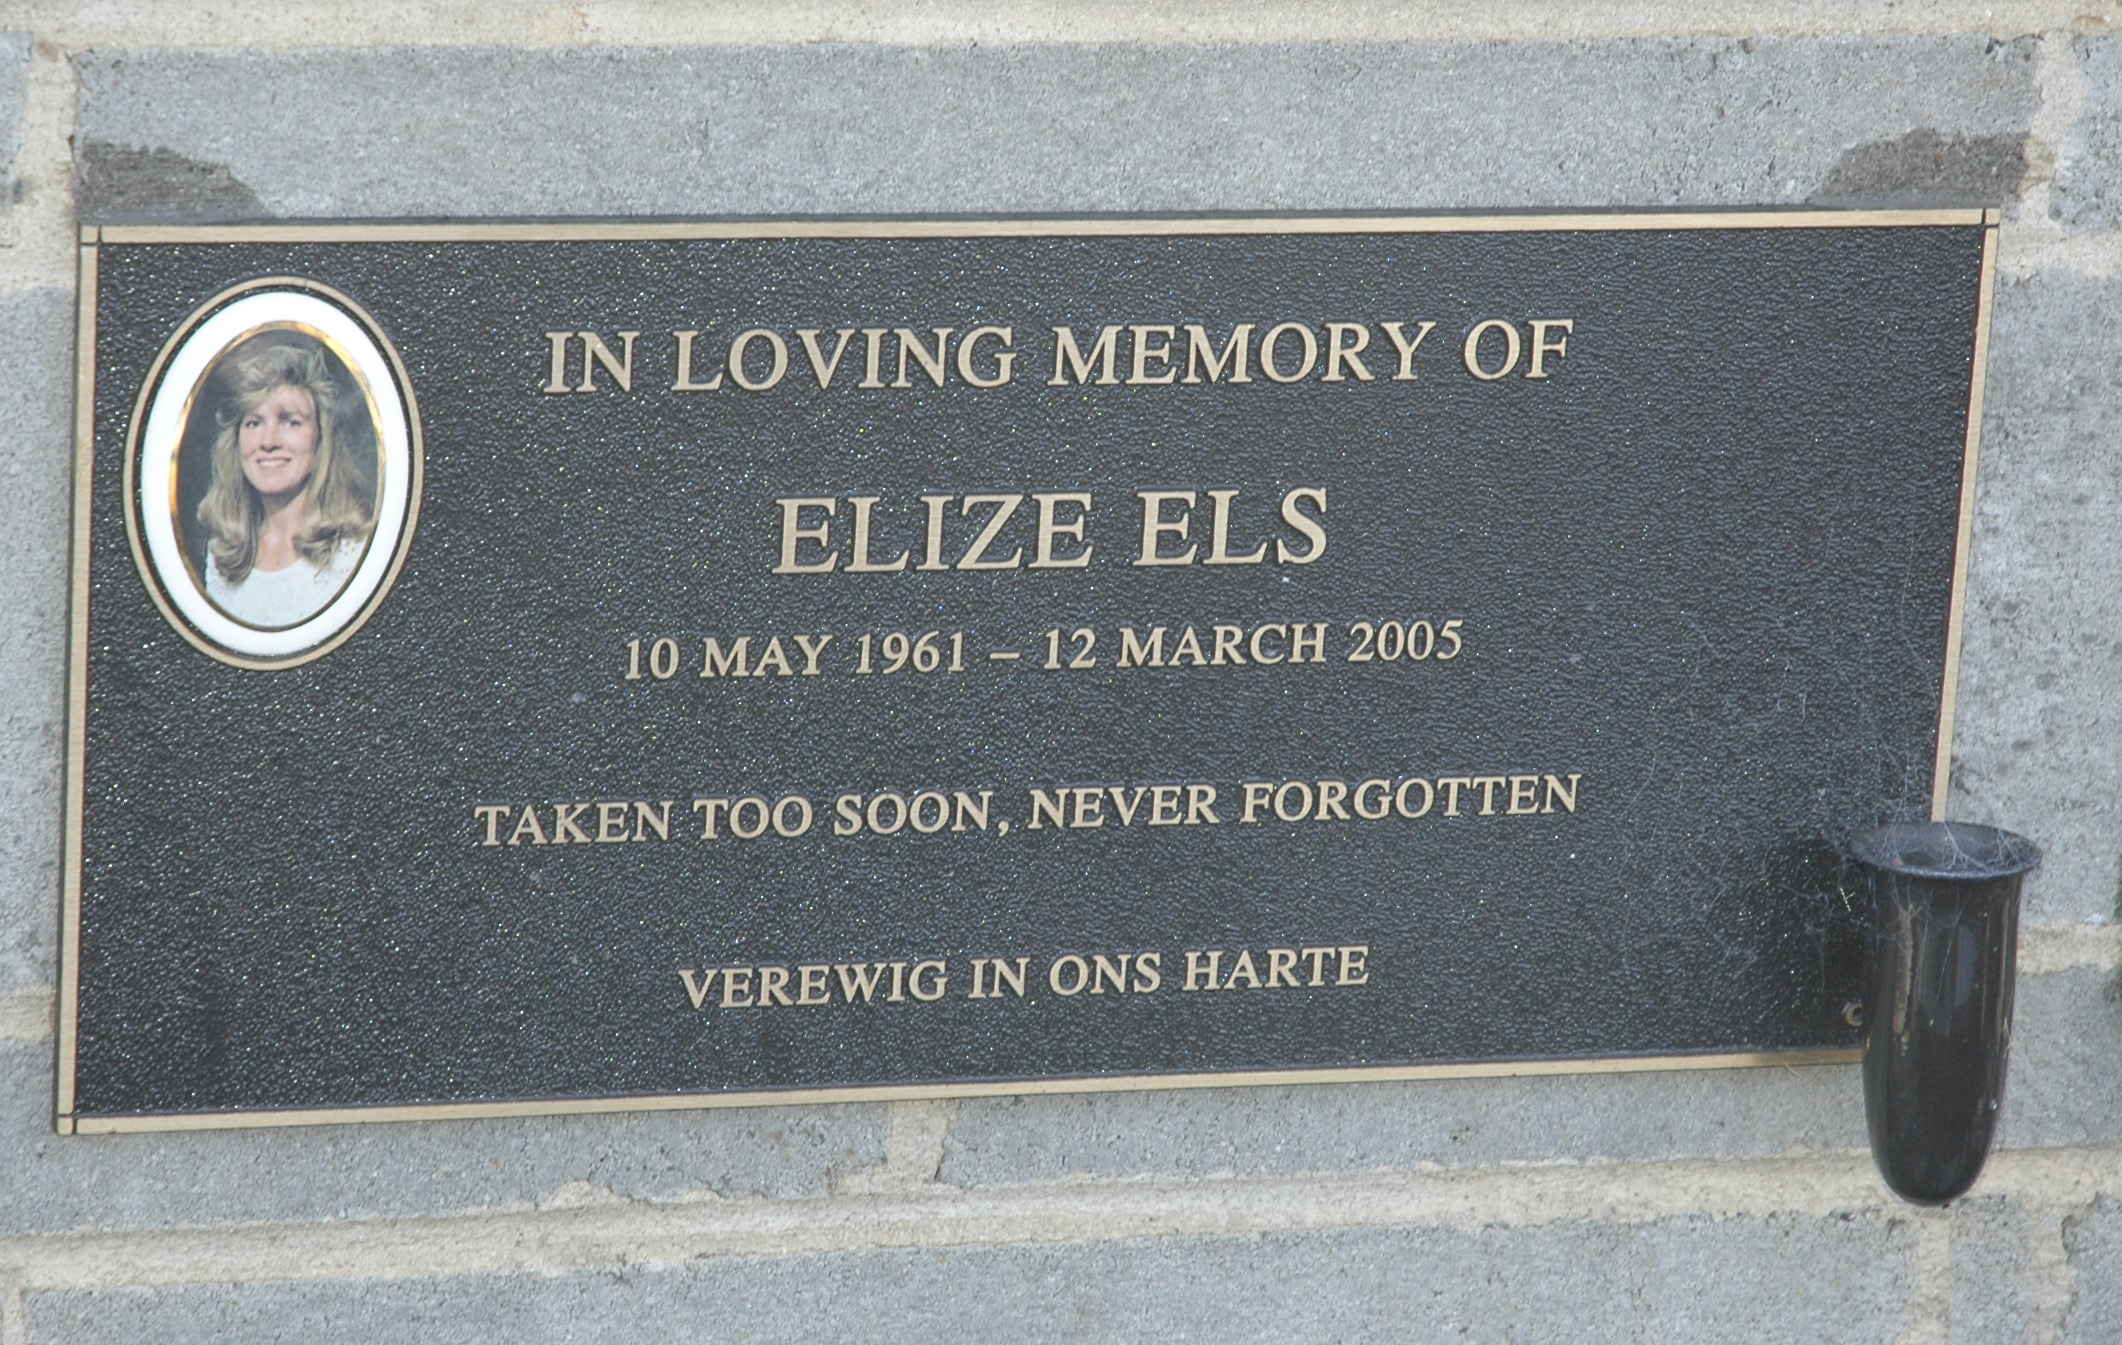 ELS Elize 1961-2005